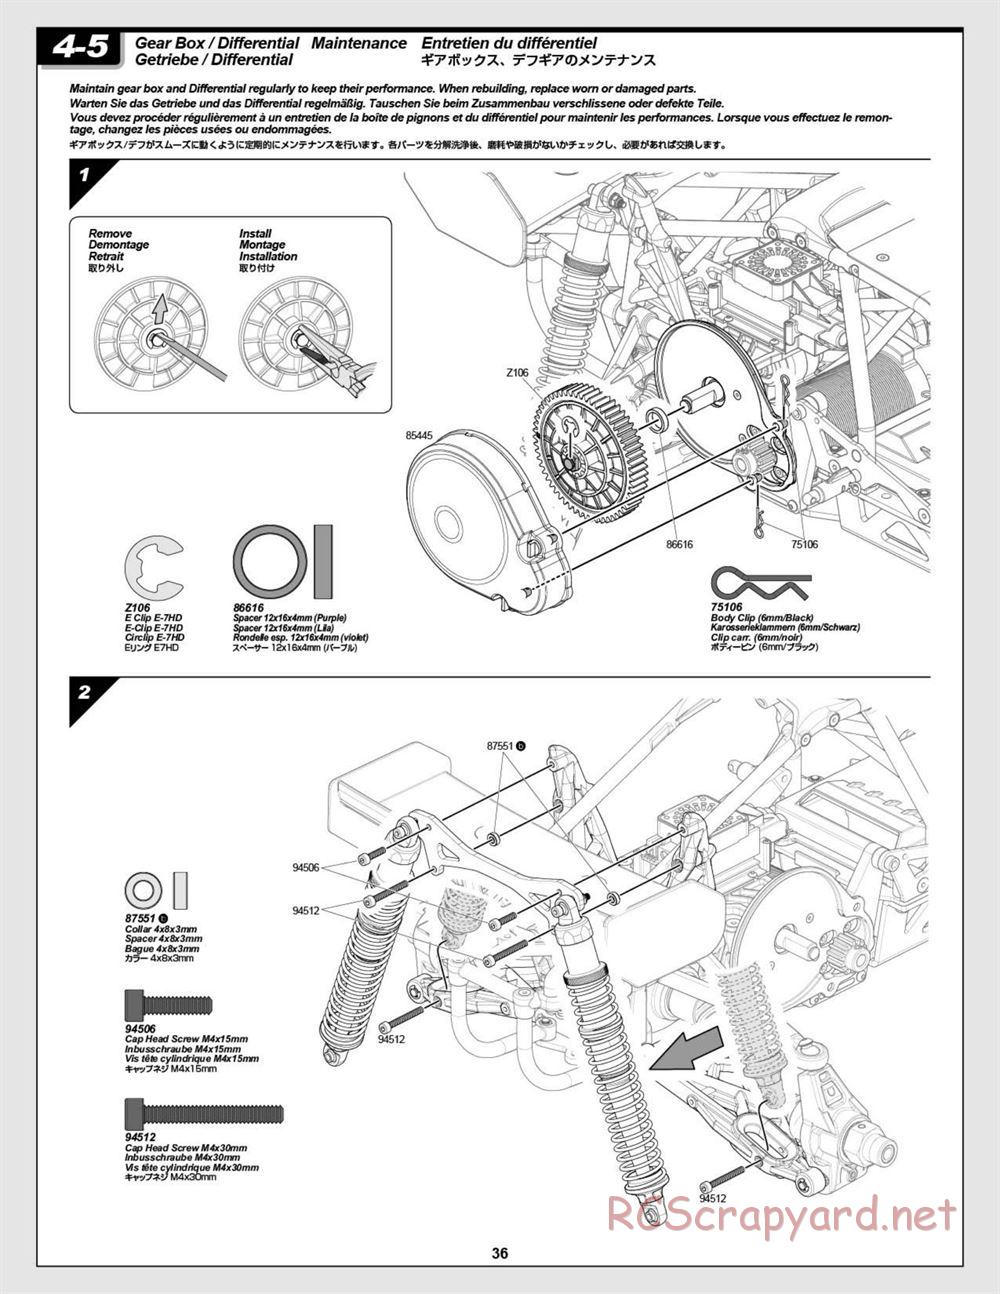 HPI - Baja 5B Flux Buggy - Manual - Page 36